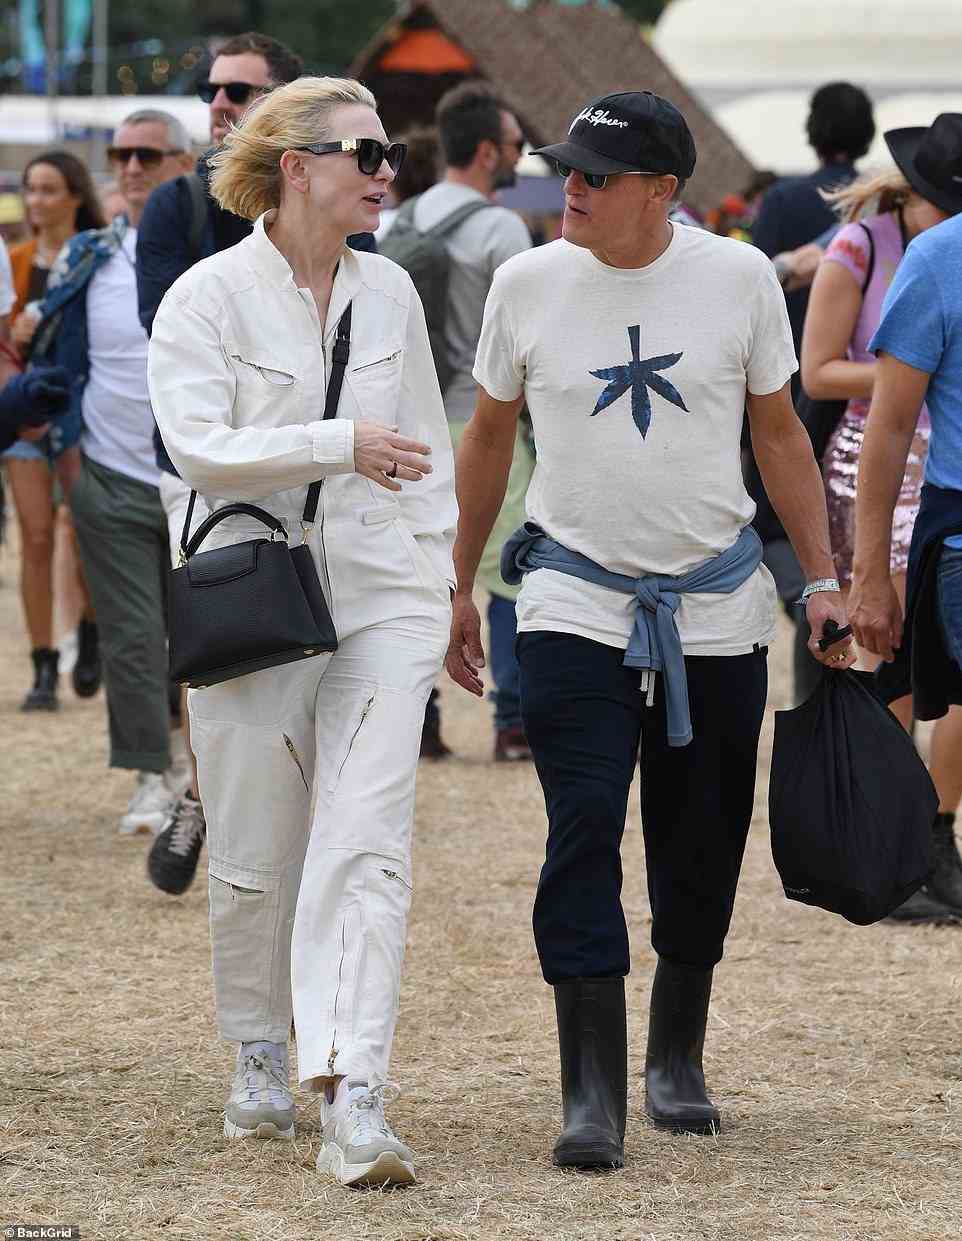 Festlich-chic: Cate Blanchett, 53, zog einen cremefarbenen Overall an, als sie und Woody Harrelson, 60, am letzten Tag des Glastonbury Festivals am Sonntag die Stars anführten